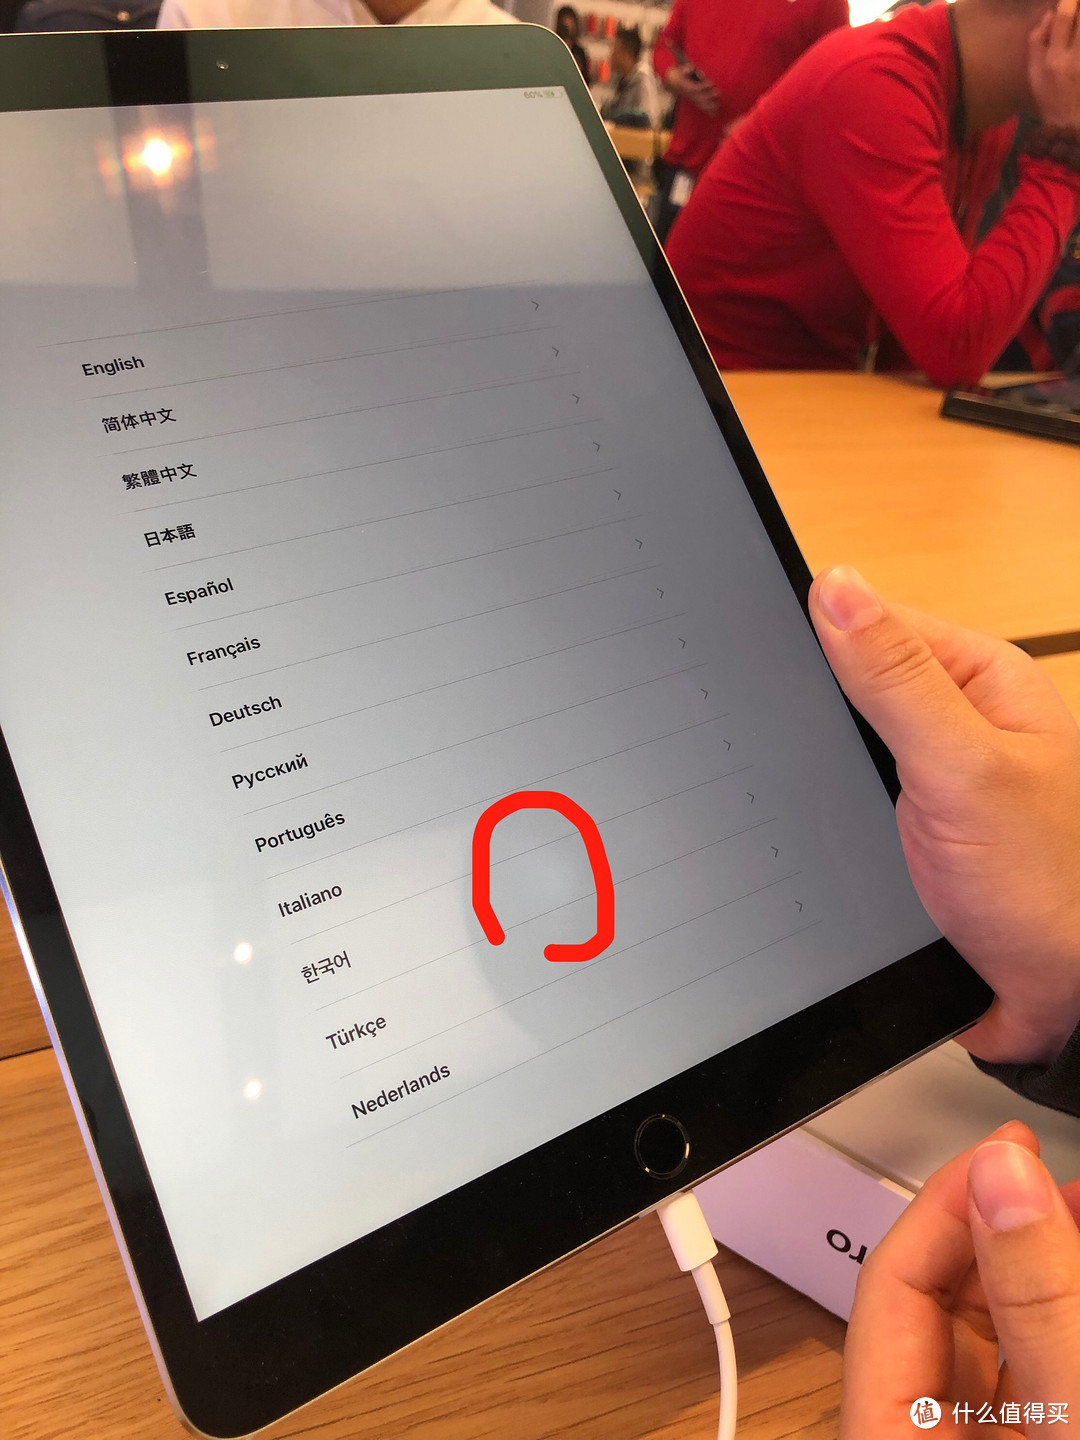 亲身经历，iPad Pro 11 屏幕故障换新2次，如果你的苹果设备有同类问题记得去换新